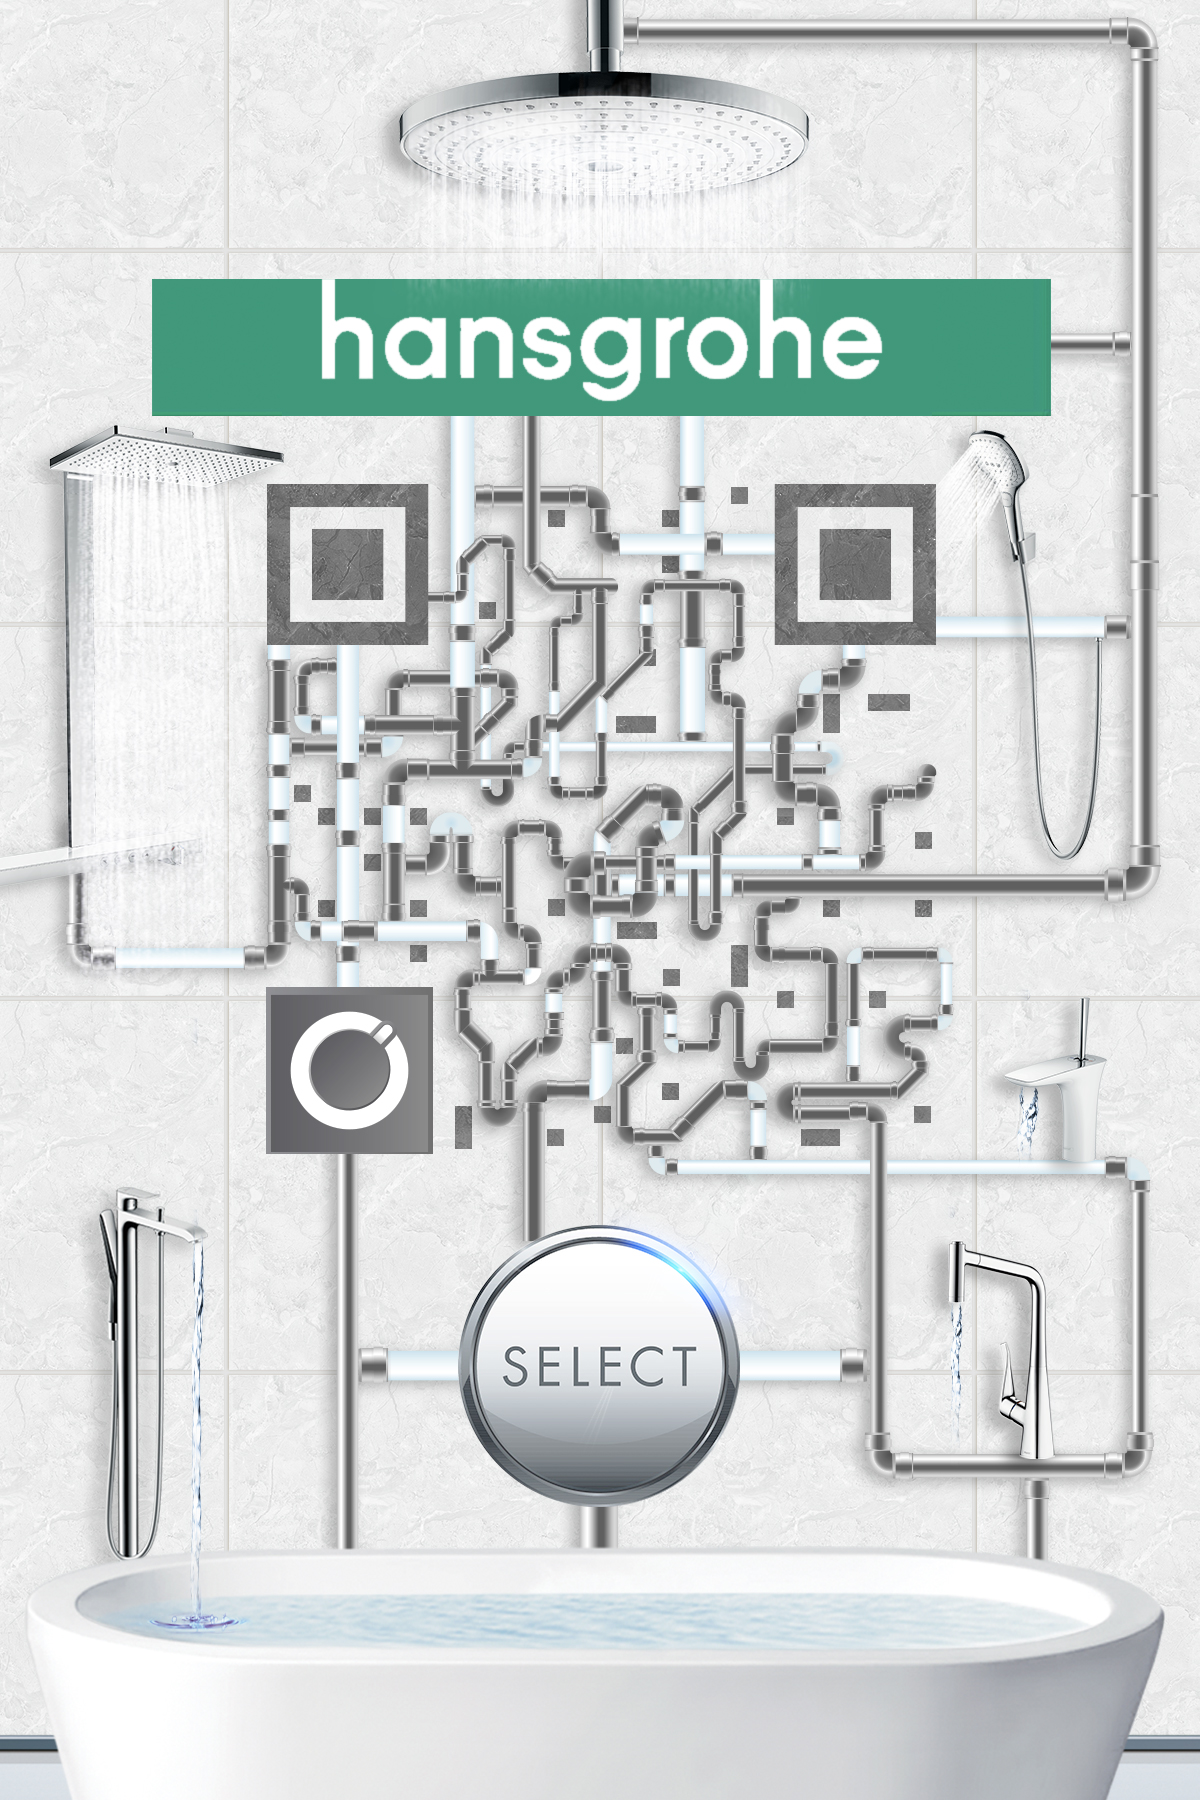 汉斯格雅平面静态艺术二维码创意二维码-第九工场设计外包